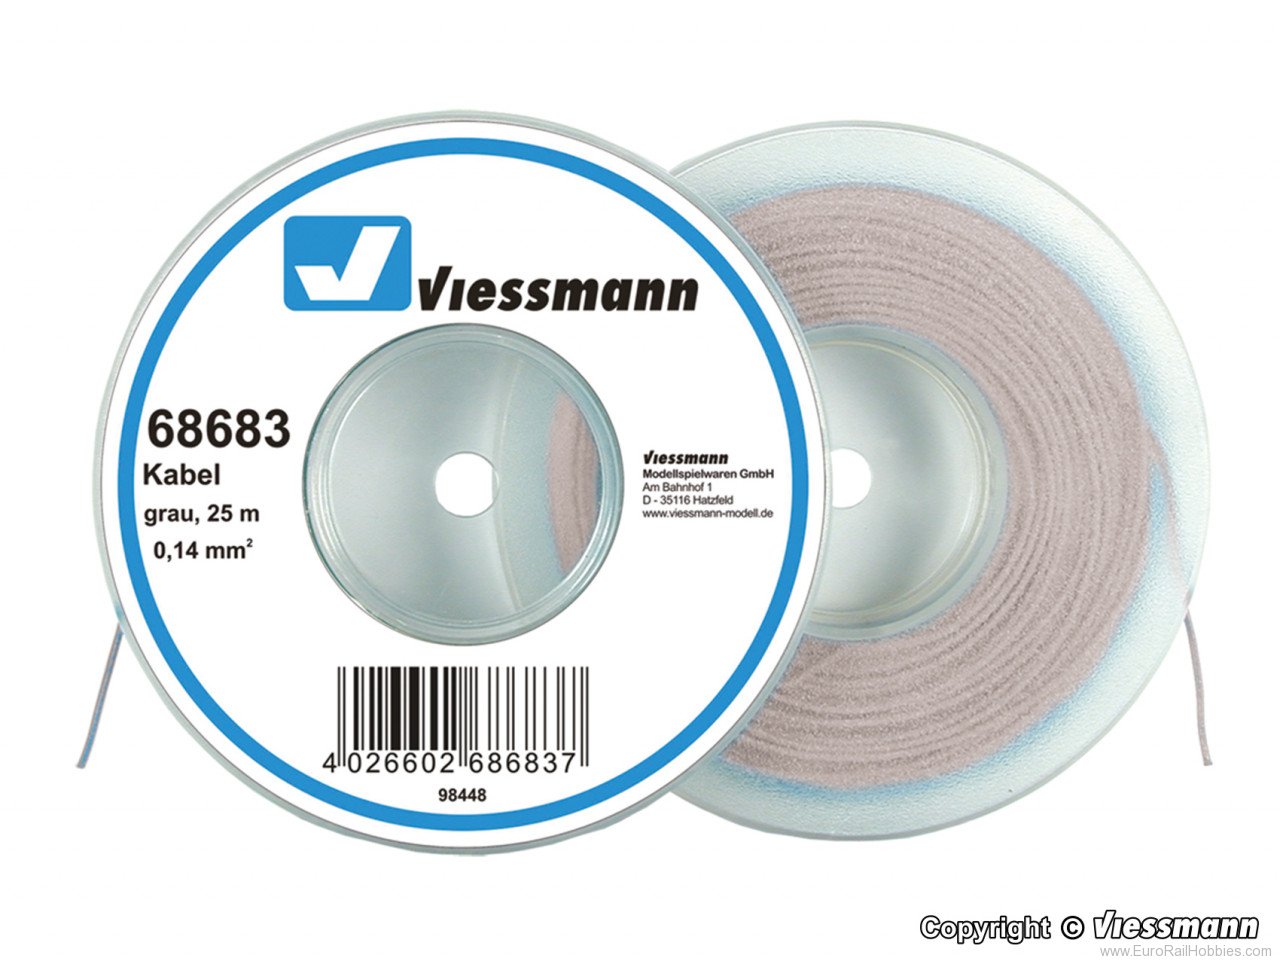 Viessmann 68683 Wire 0,14 mm dia., grey, 25 m